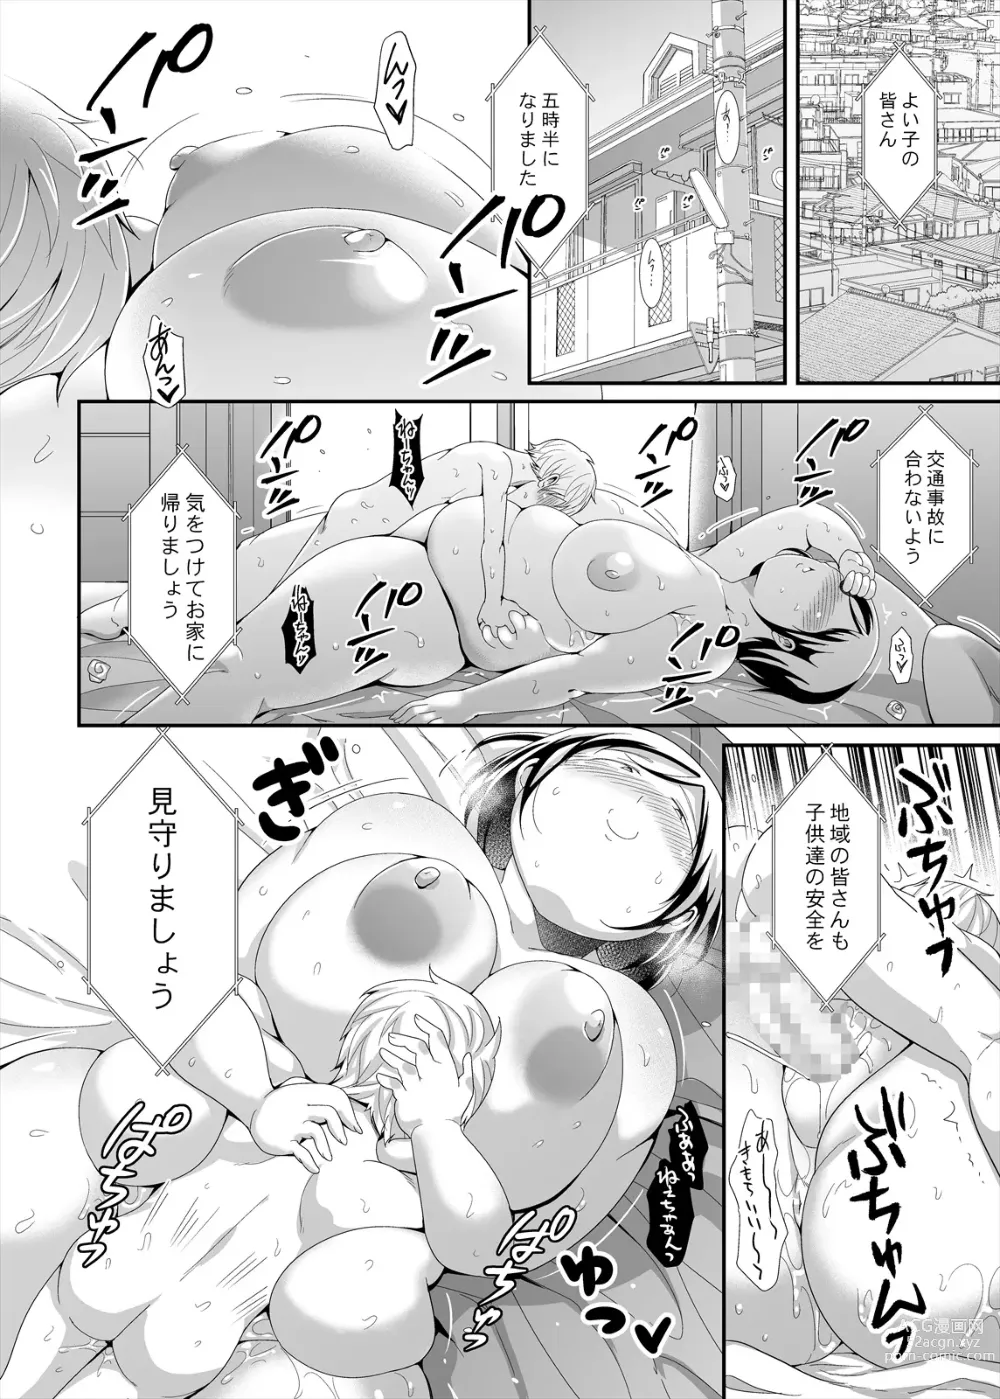 Page 28 of doujinshi Otonari no jimipotya onechan